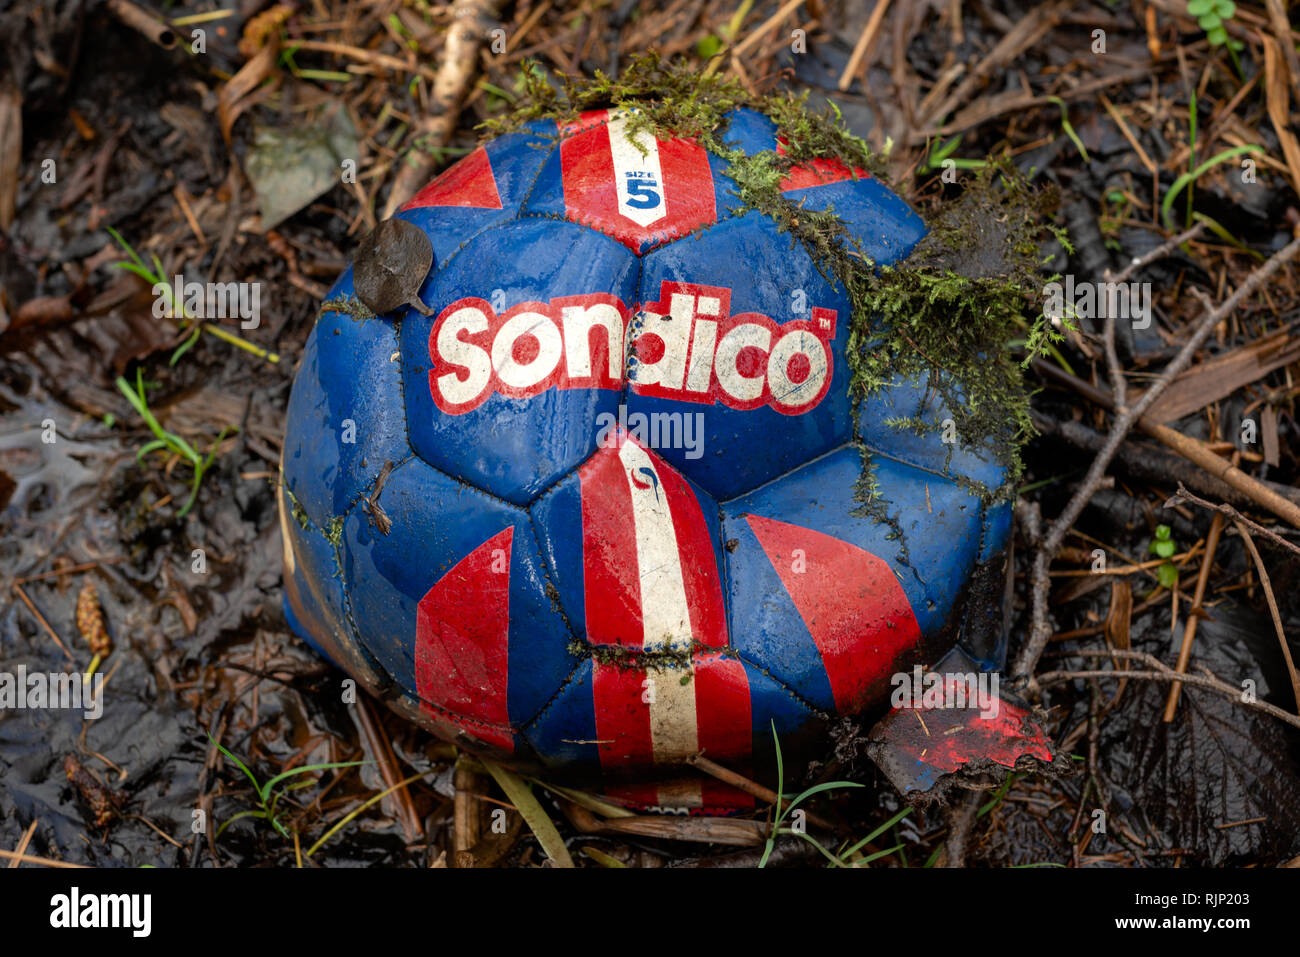 Der alte, verlassene Sondico Fußball Fußball in feuchtem Wald als nutzloses Objekt. Stockfoto